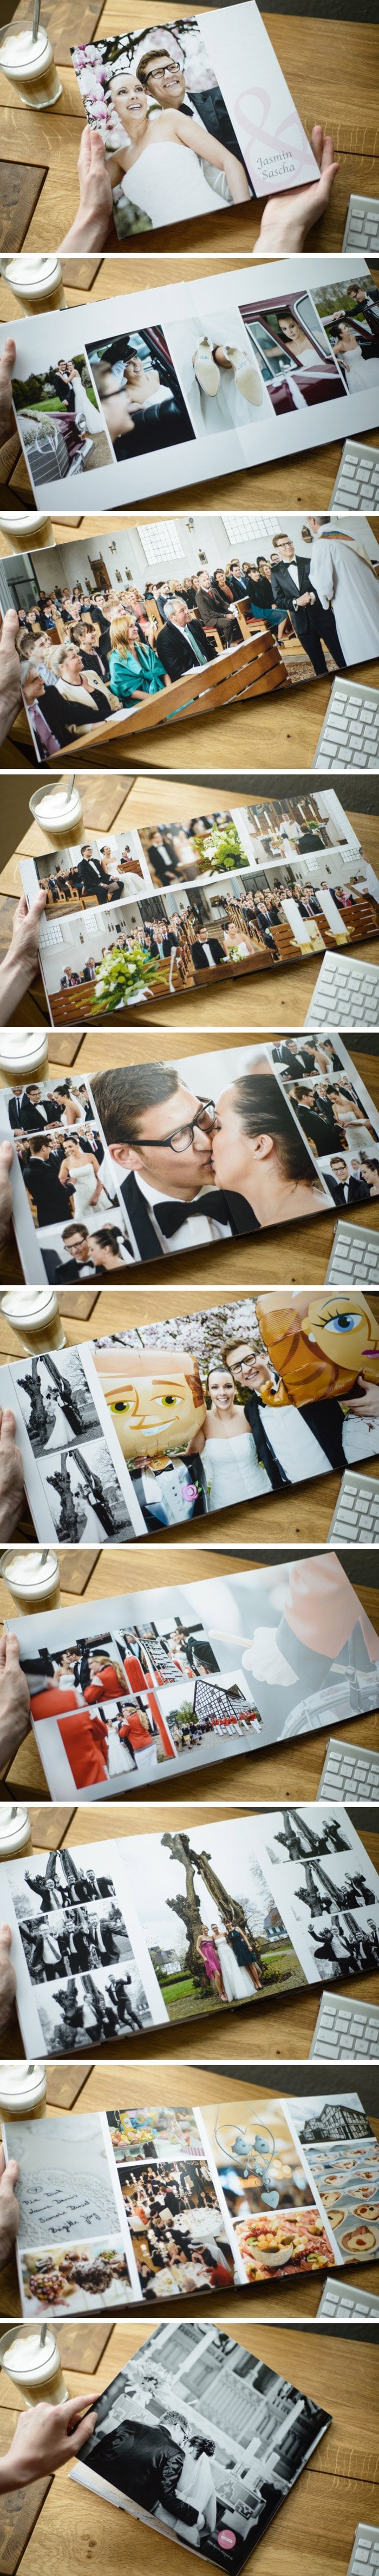 Es ist nochmal was anderes wenn man die Bilder in Händen halten kann. Ich hab schnell mal einige Seiten der neuen Hochzeitsbücher abfotografiert. Nun ab zur Post, die zwei Paare freuen sich sicherlich wenn ihr Buch flott ankommt.